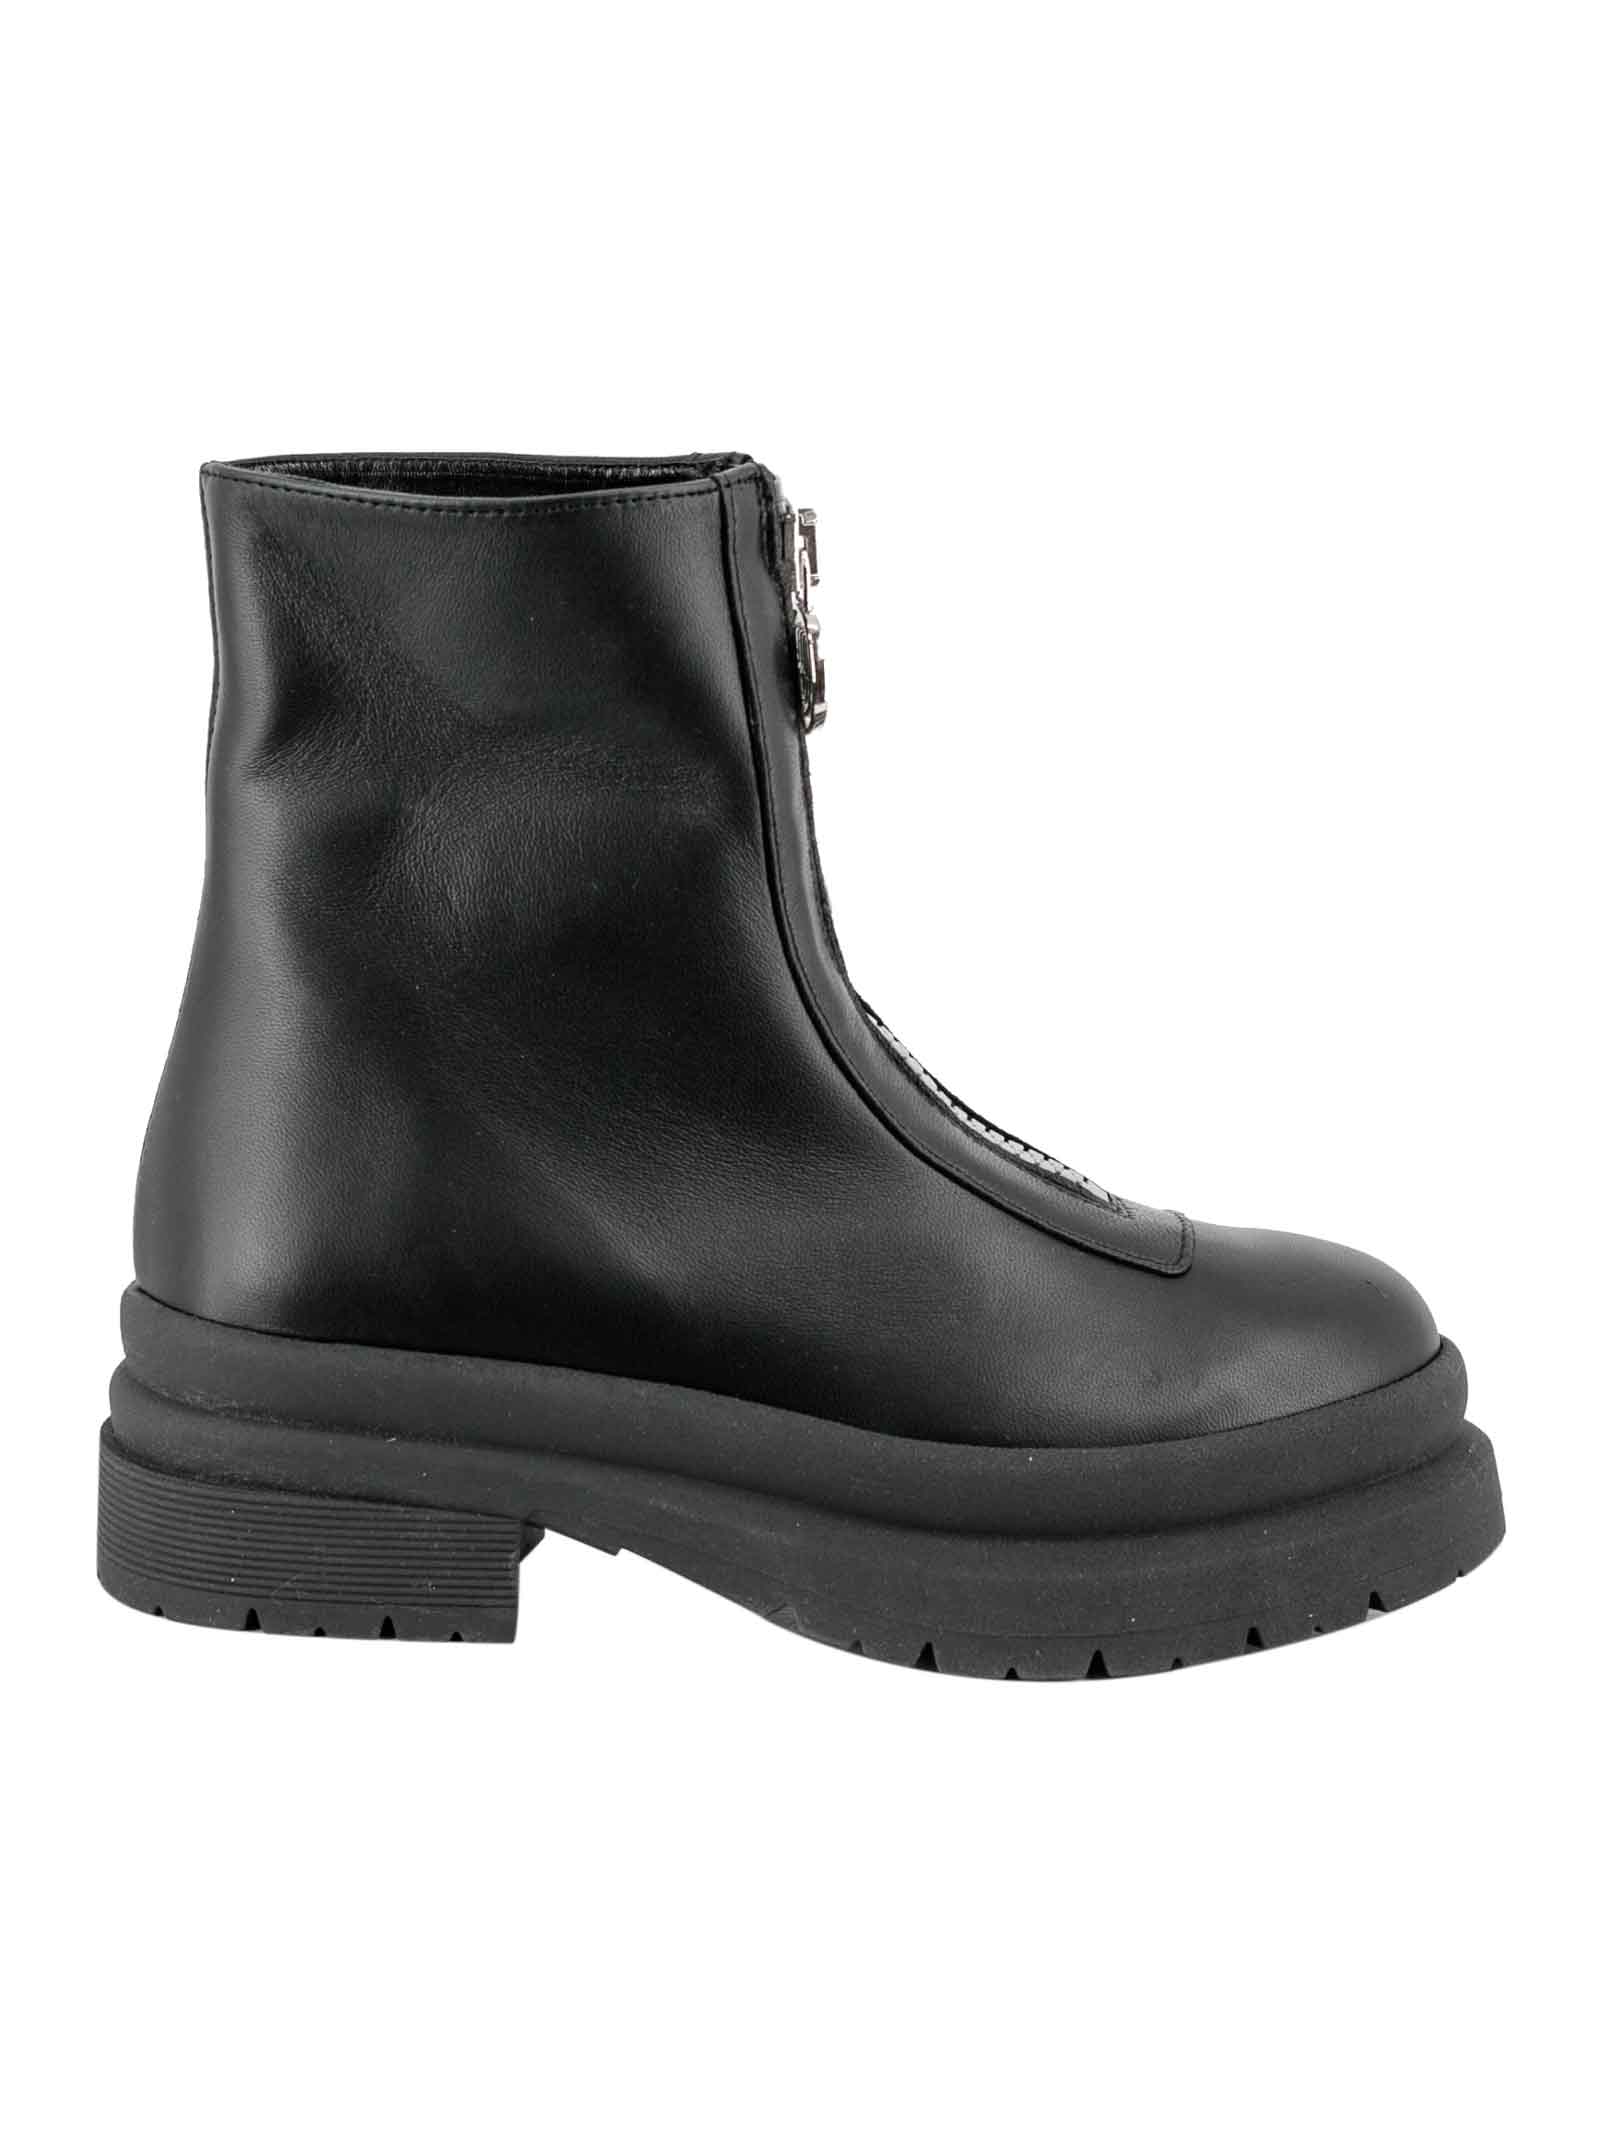 Chiara Ferragni Leather Boots